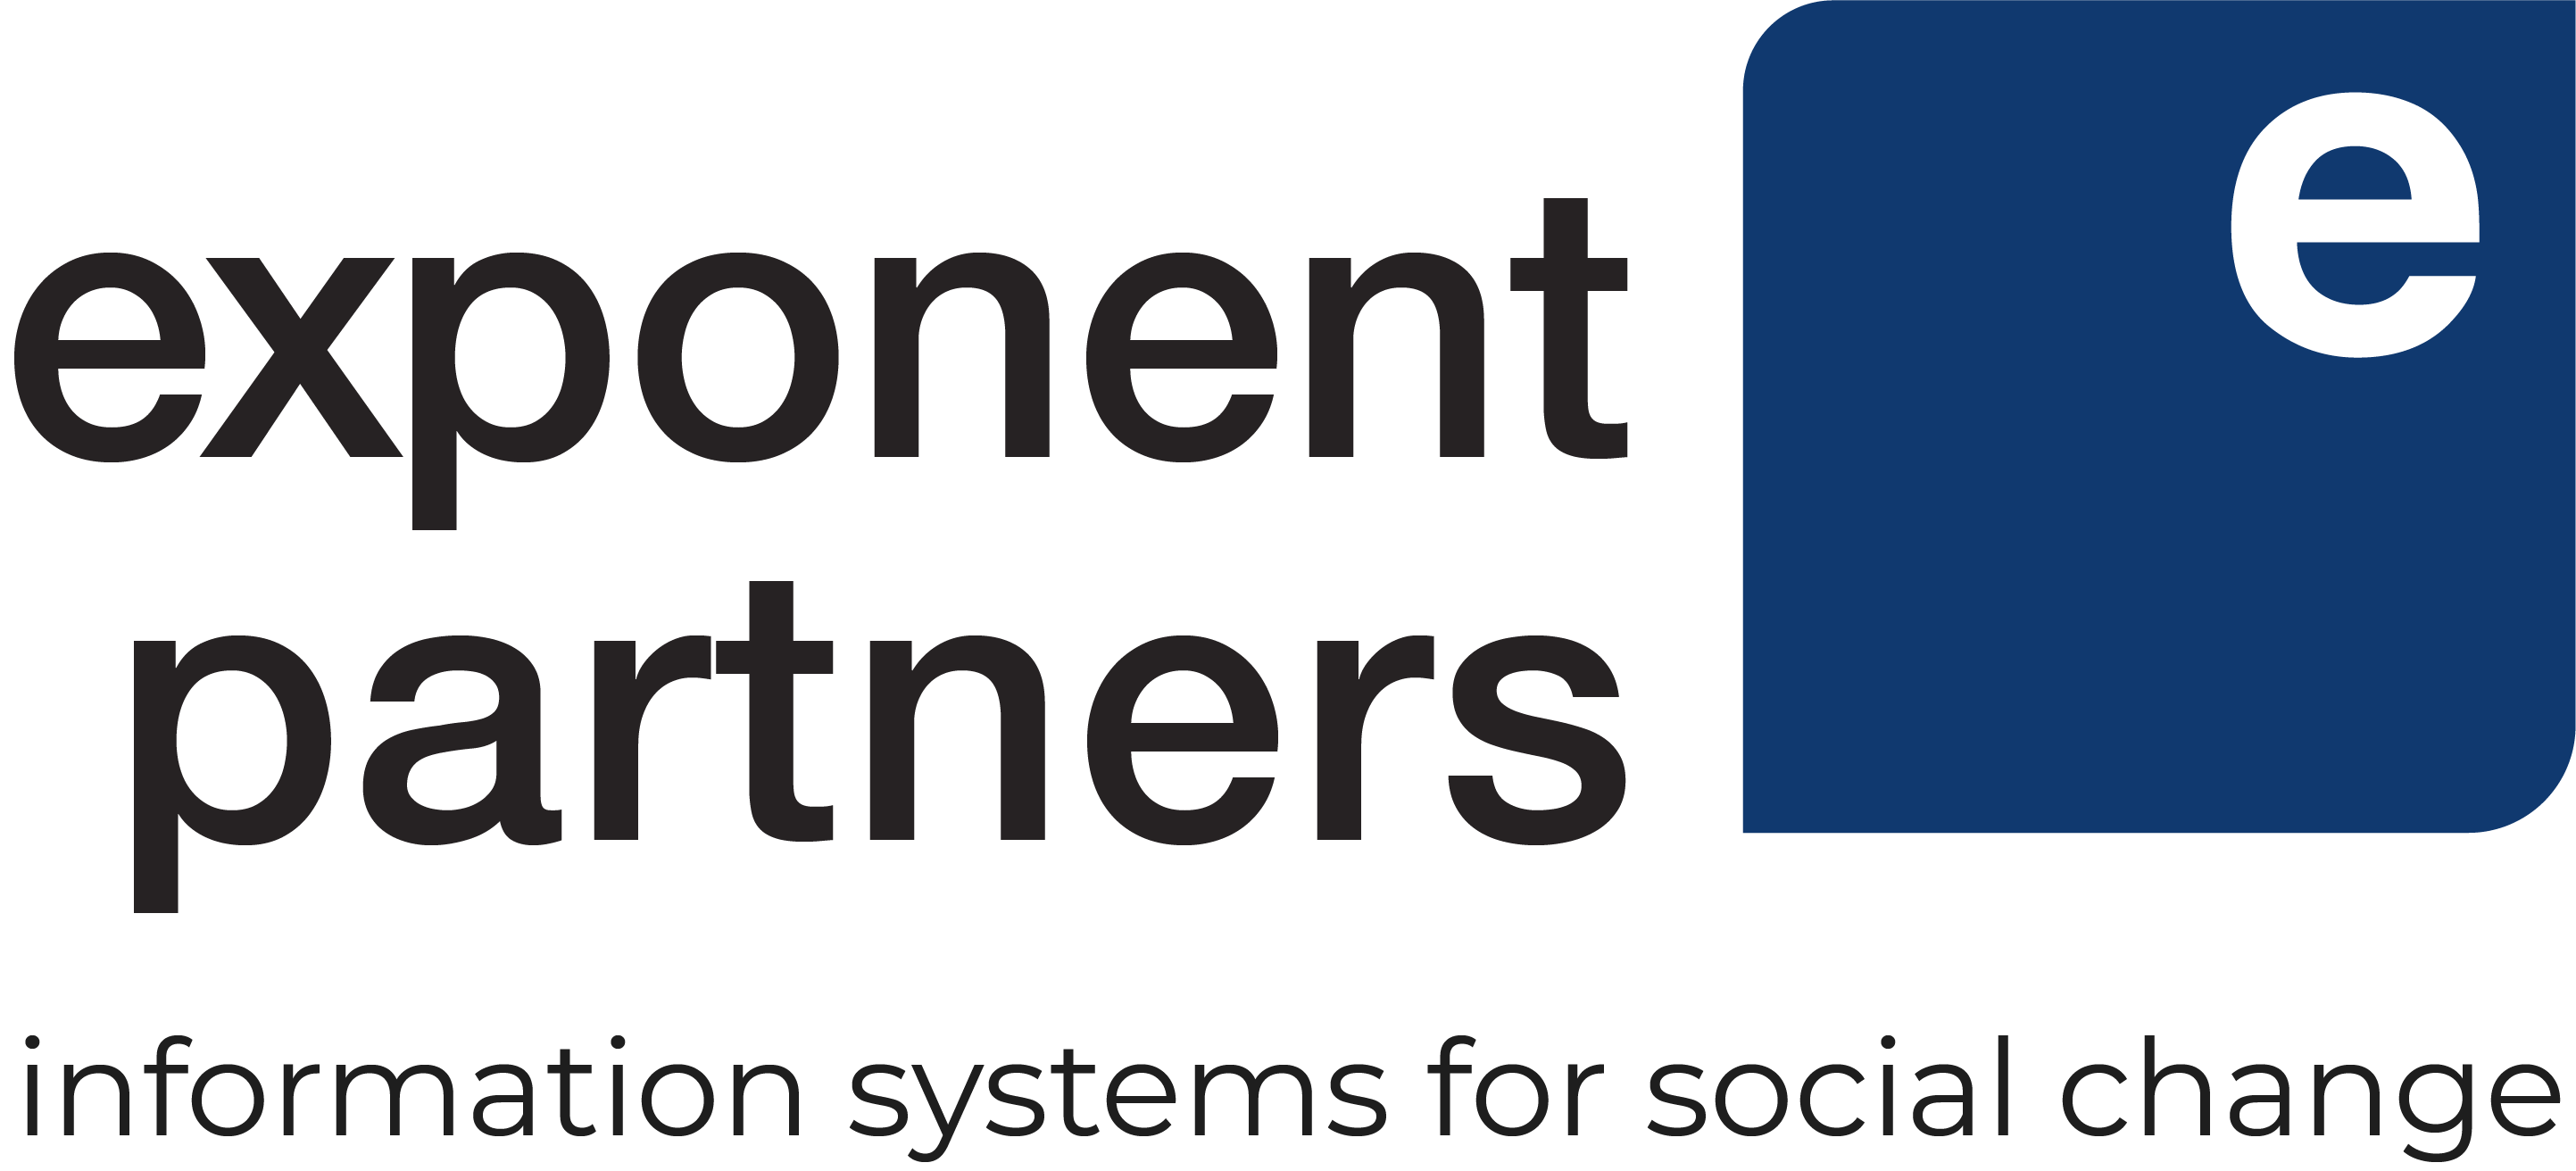 Exponent Partners Descriptor Logo